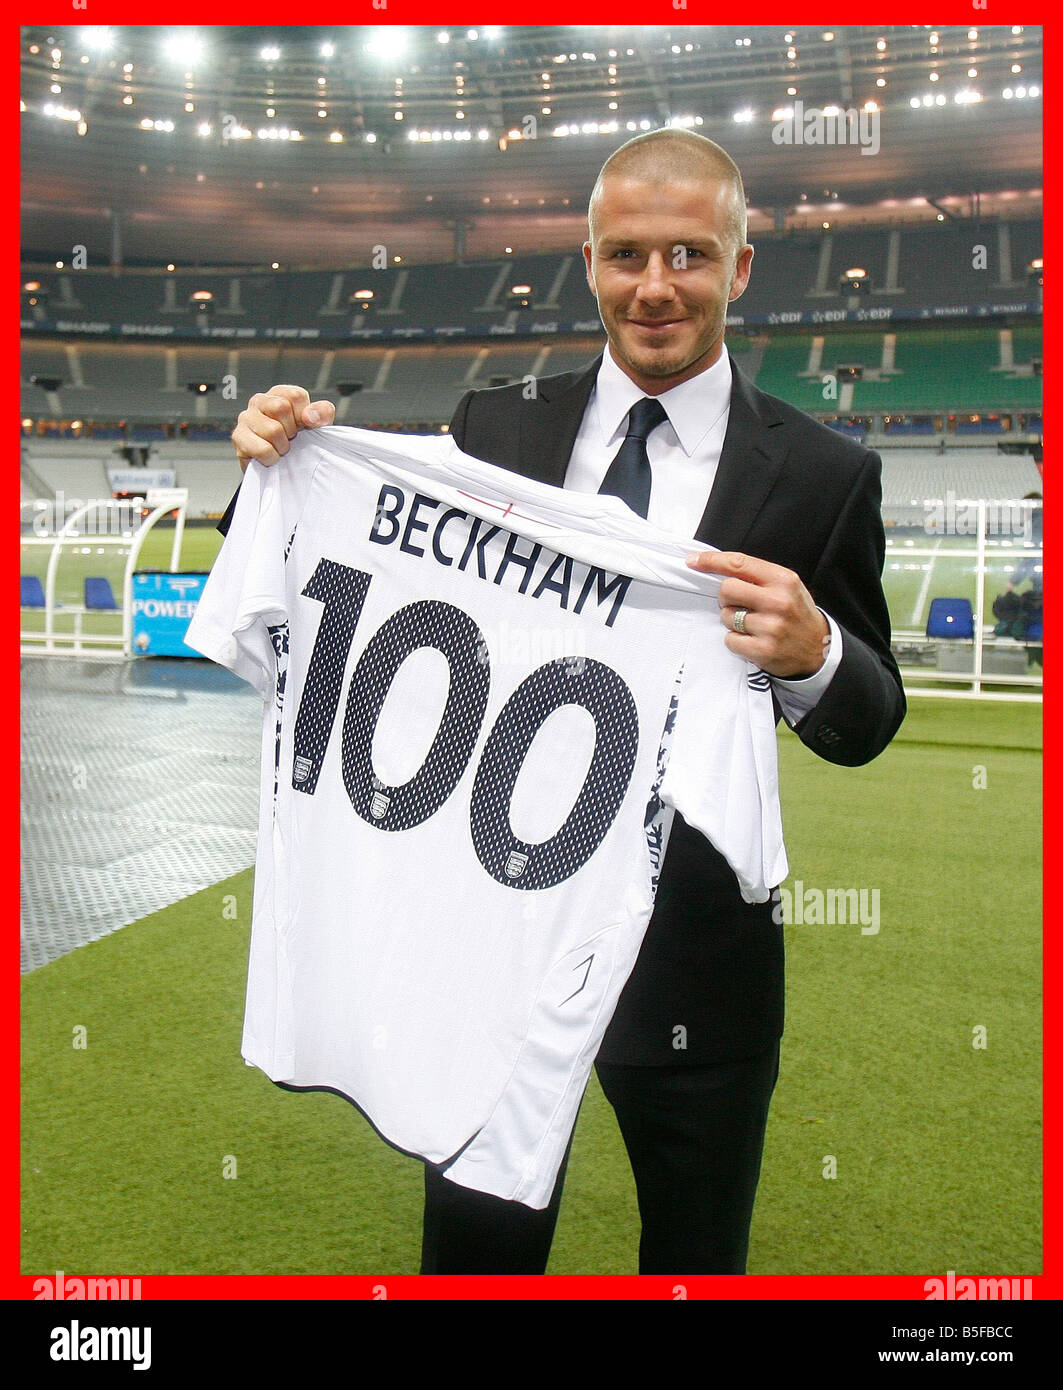 David Beckham im Bild im Stade de France Paris hält eine spezielle Gedenkmünze Shirt anlässlich seiner Leistung von 100 Länderspielen für England Stockfoto